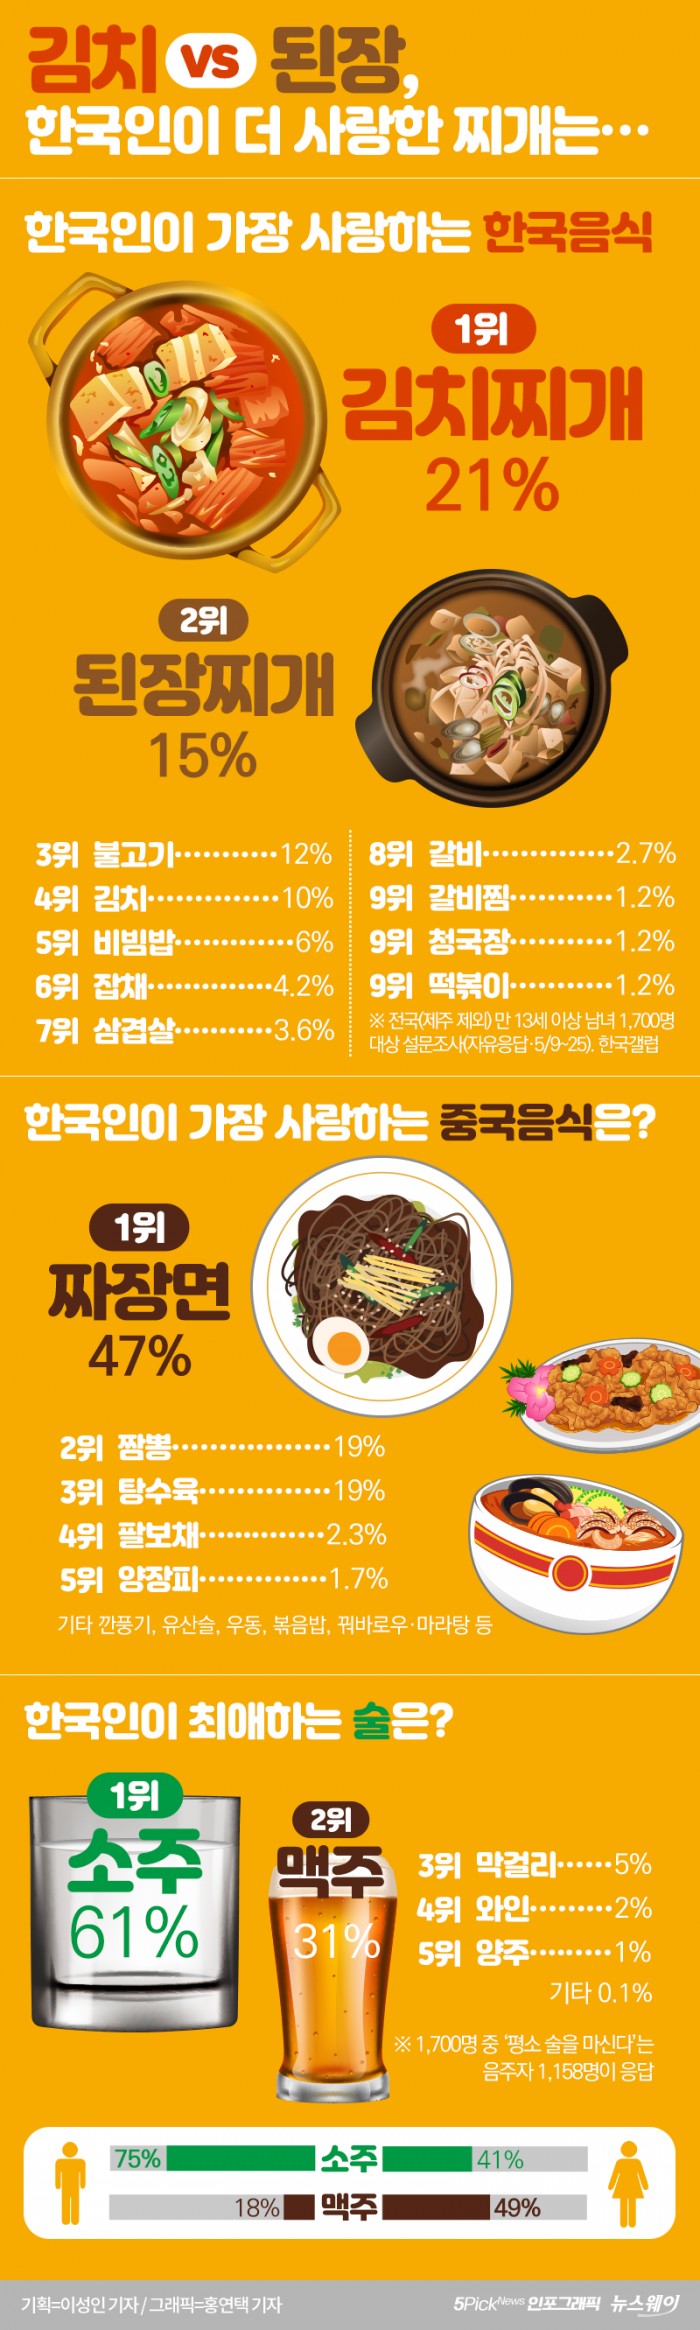 김치 vs 된장, 한국인이 더 사랑한 찌개는··· 기사의 사진